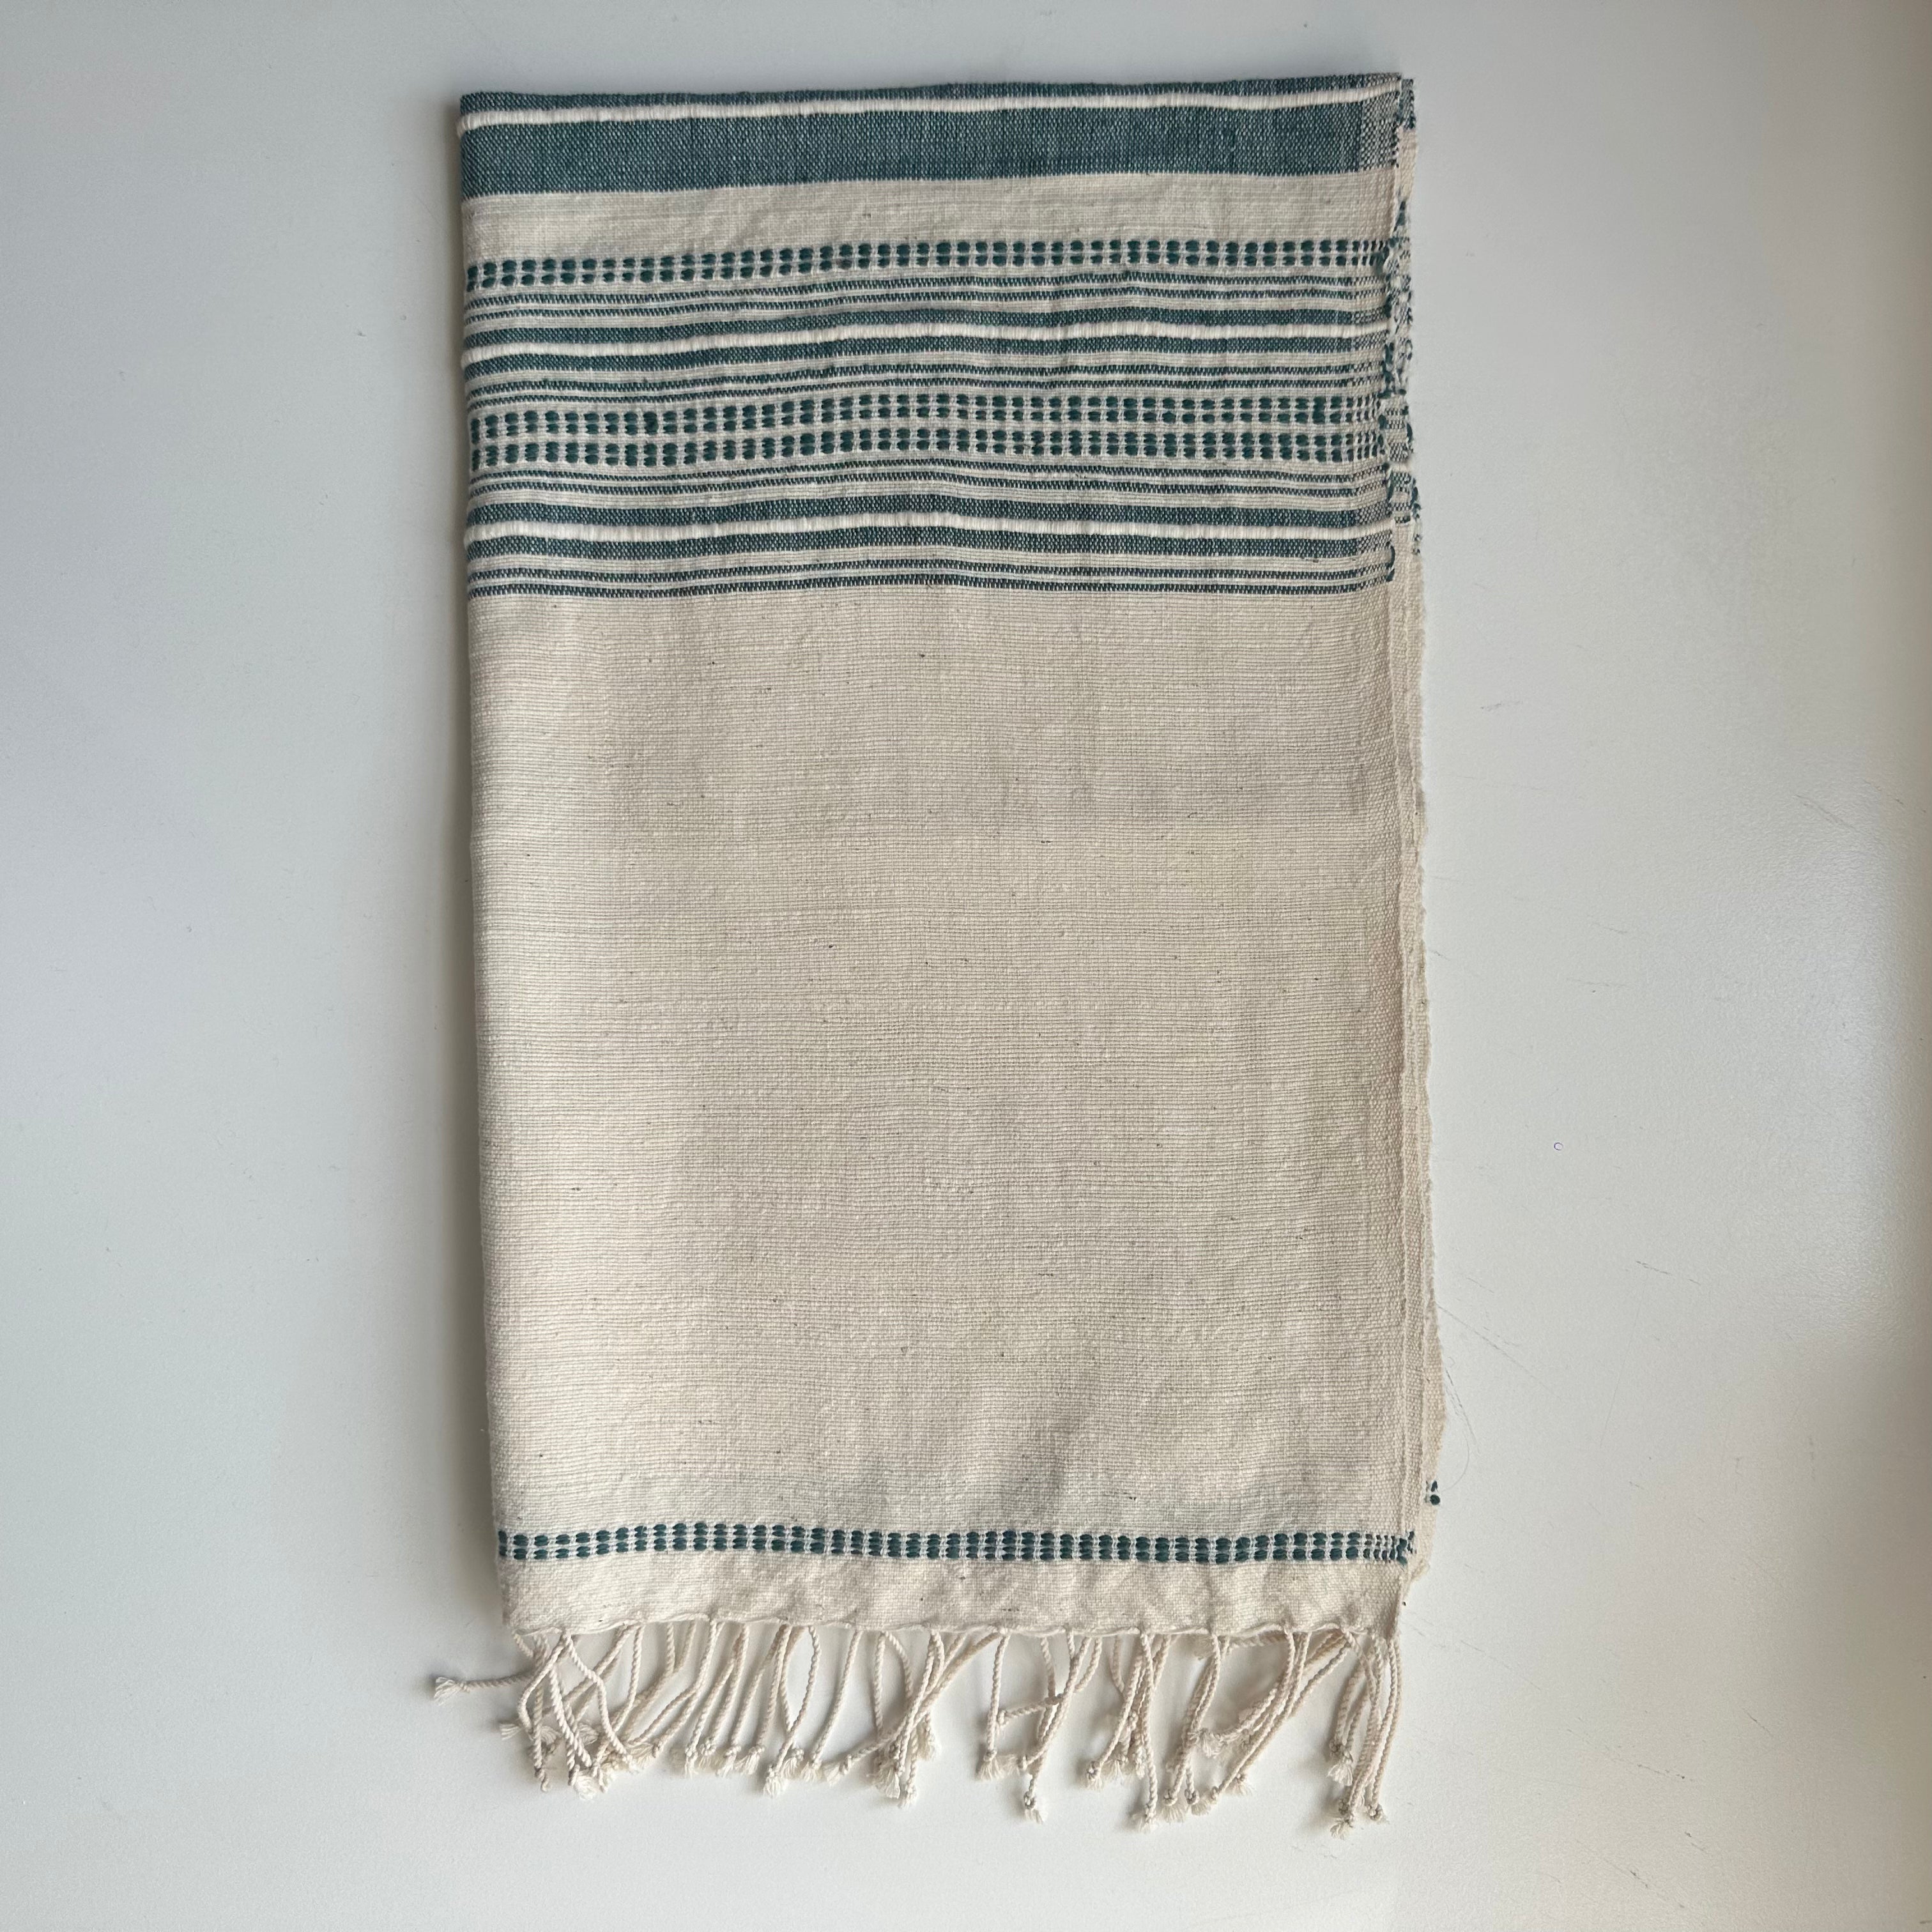 Ethiopian Handwoven Cotton Hand towels